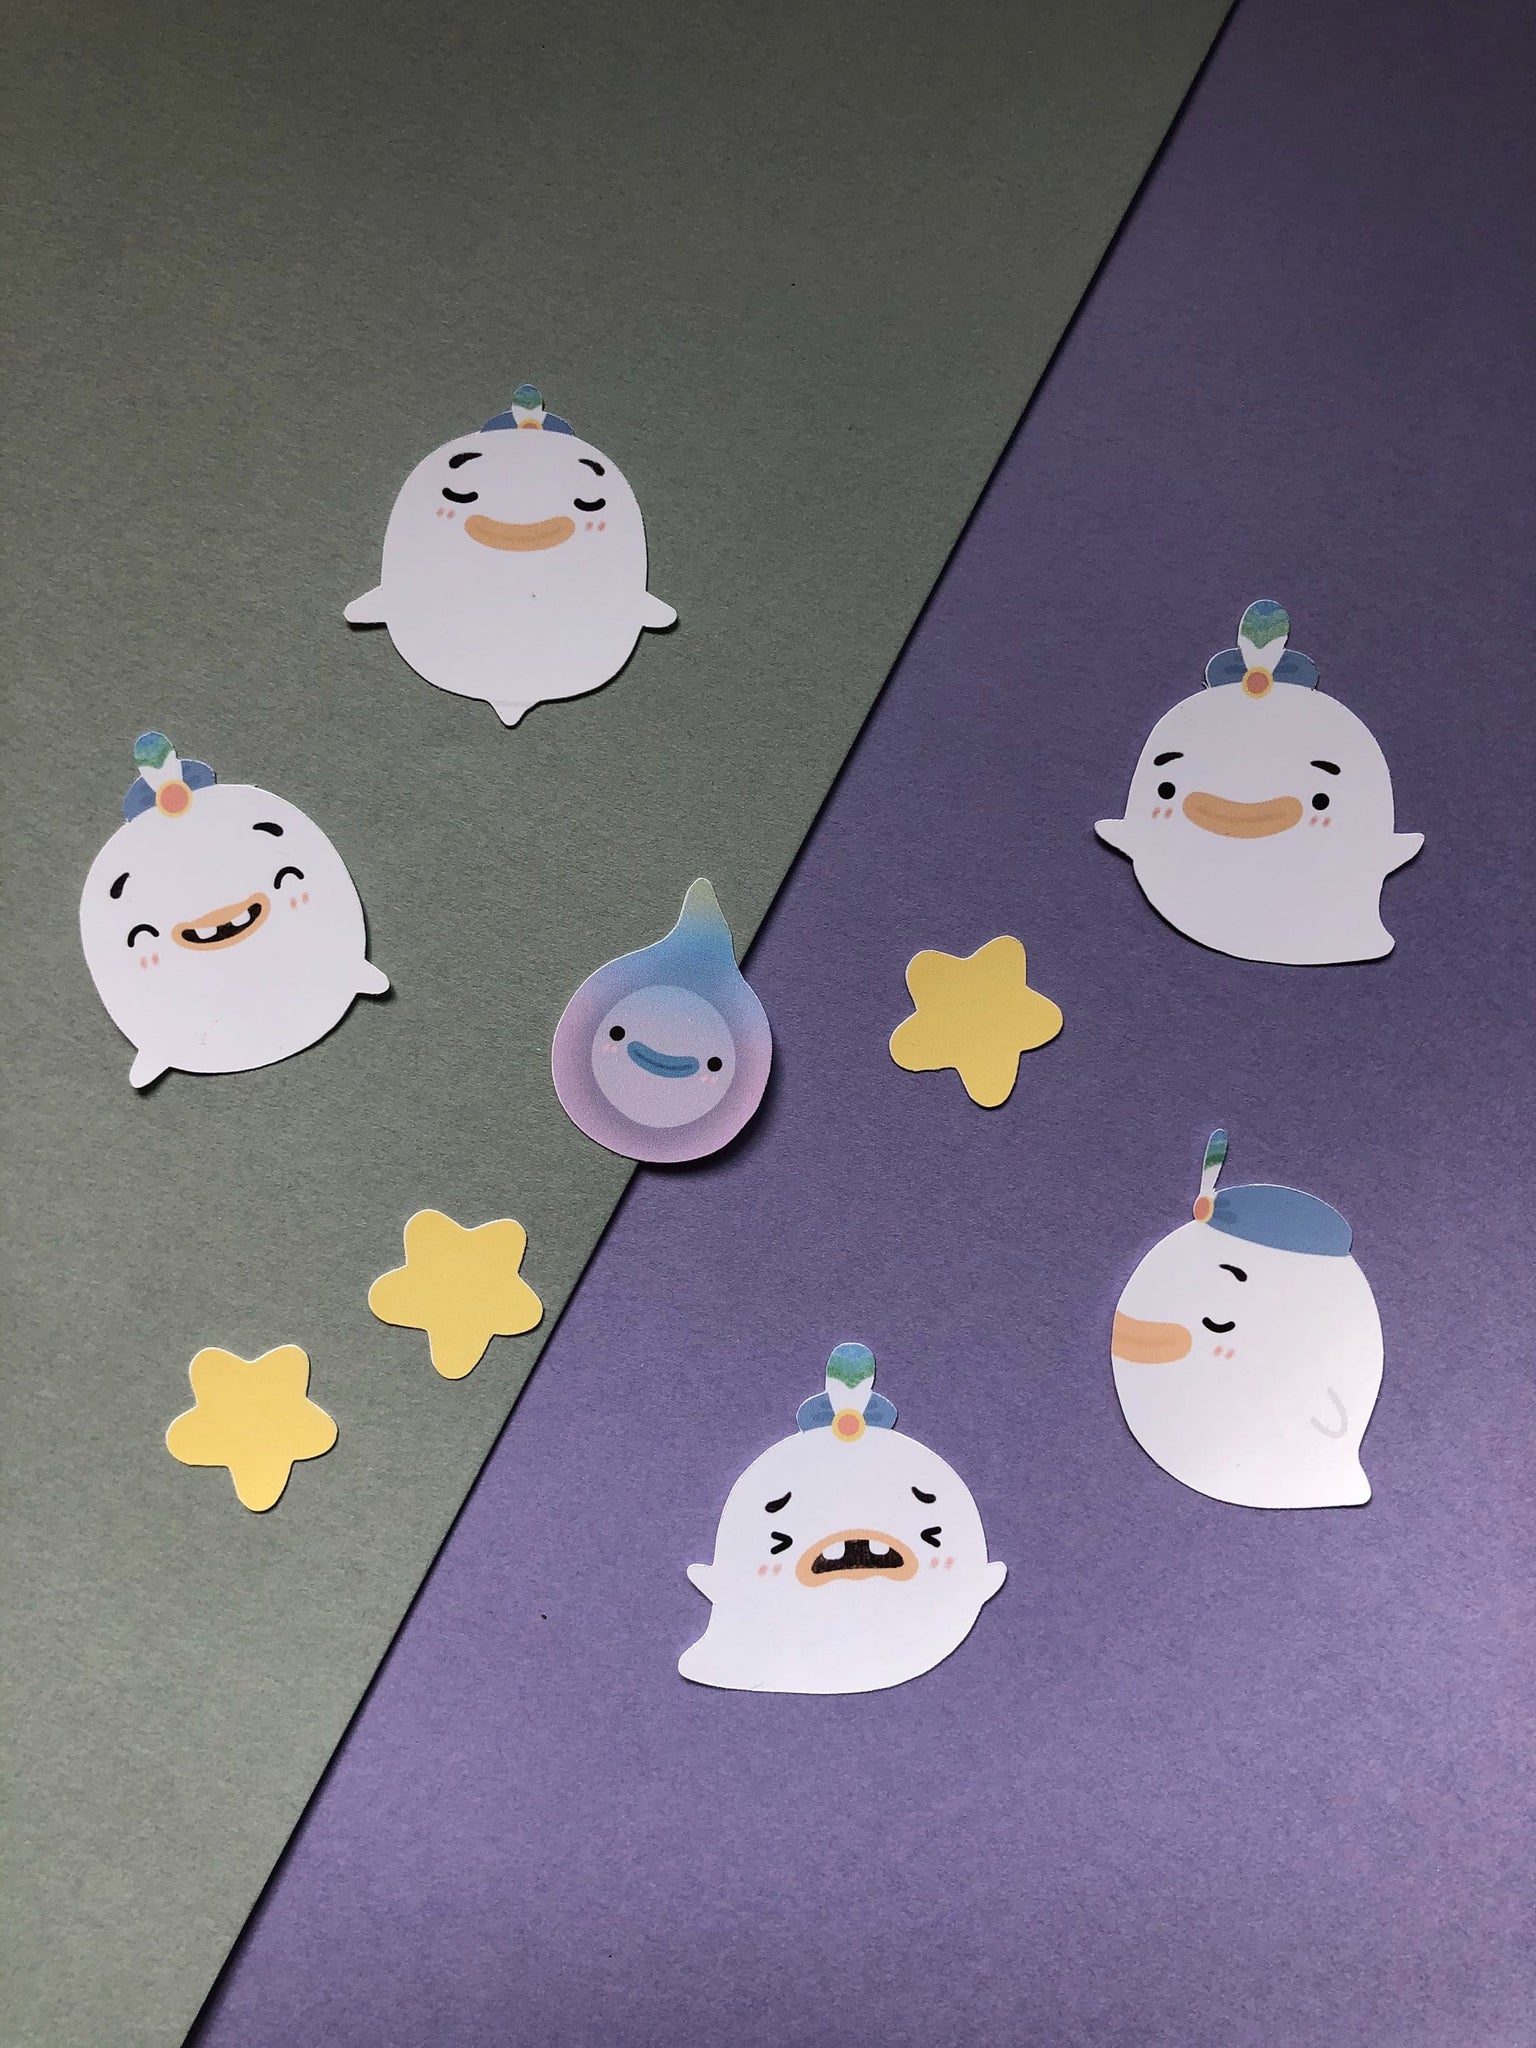 ghost wisp animal crossing sticker pack (9 stickers) - Hey Soosie